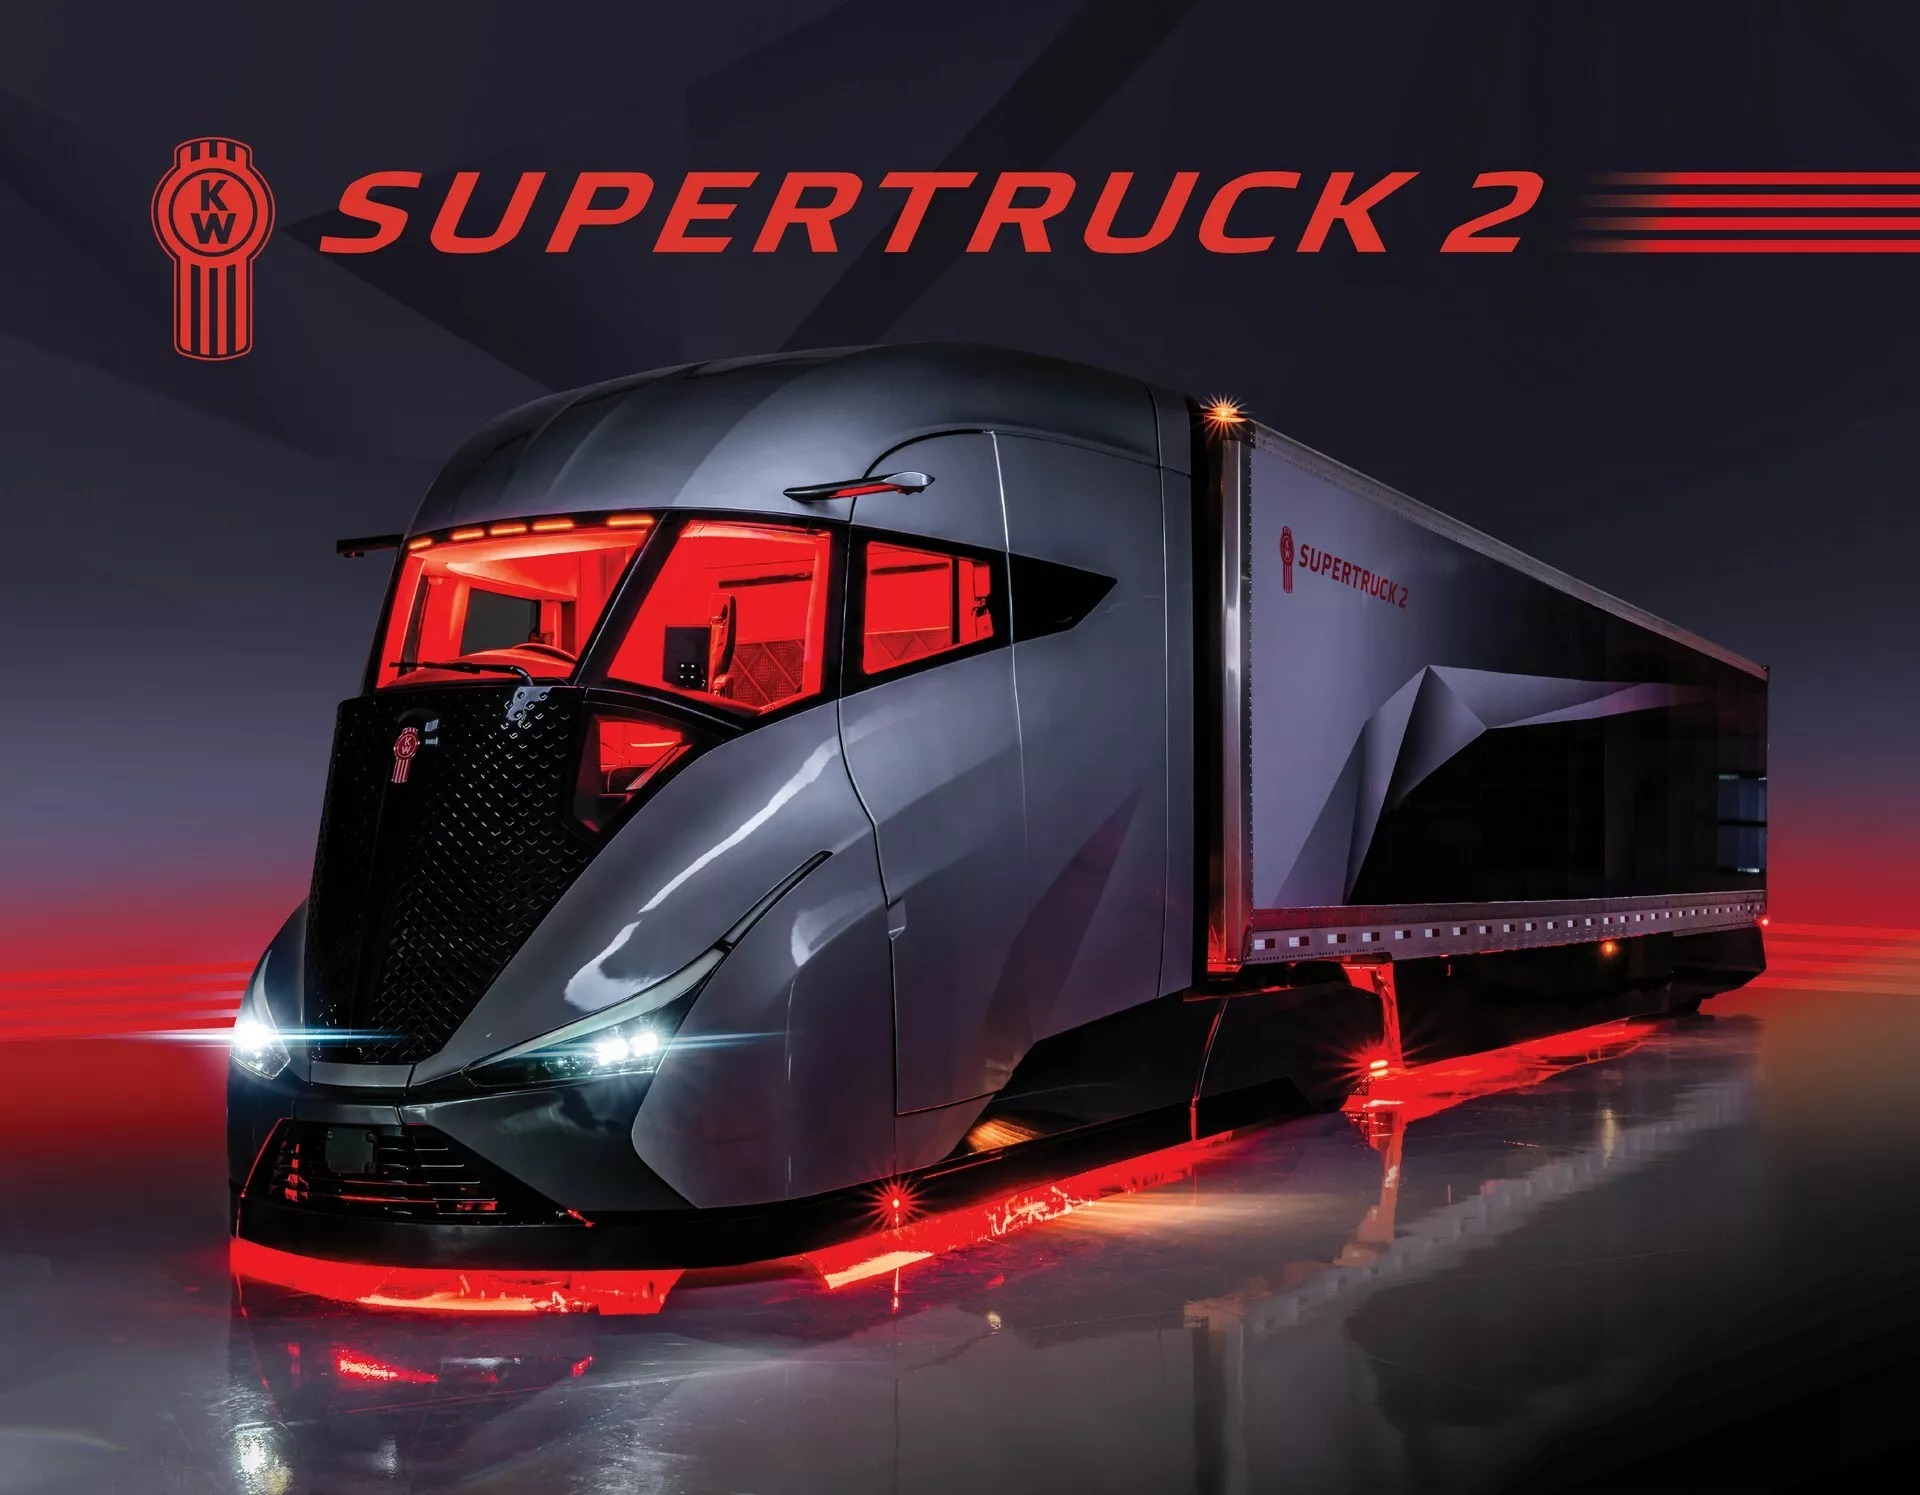 Ra mắt siêu xe tải SuperTruck 2: 12 tấn nhưng chỉ ăn 18L/100km, mạnh như xe thể thao, camera thay gương, nội thất như nhà di động- Ảnh 6.